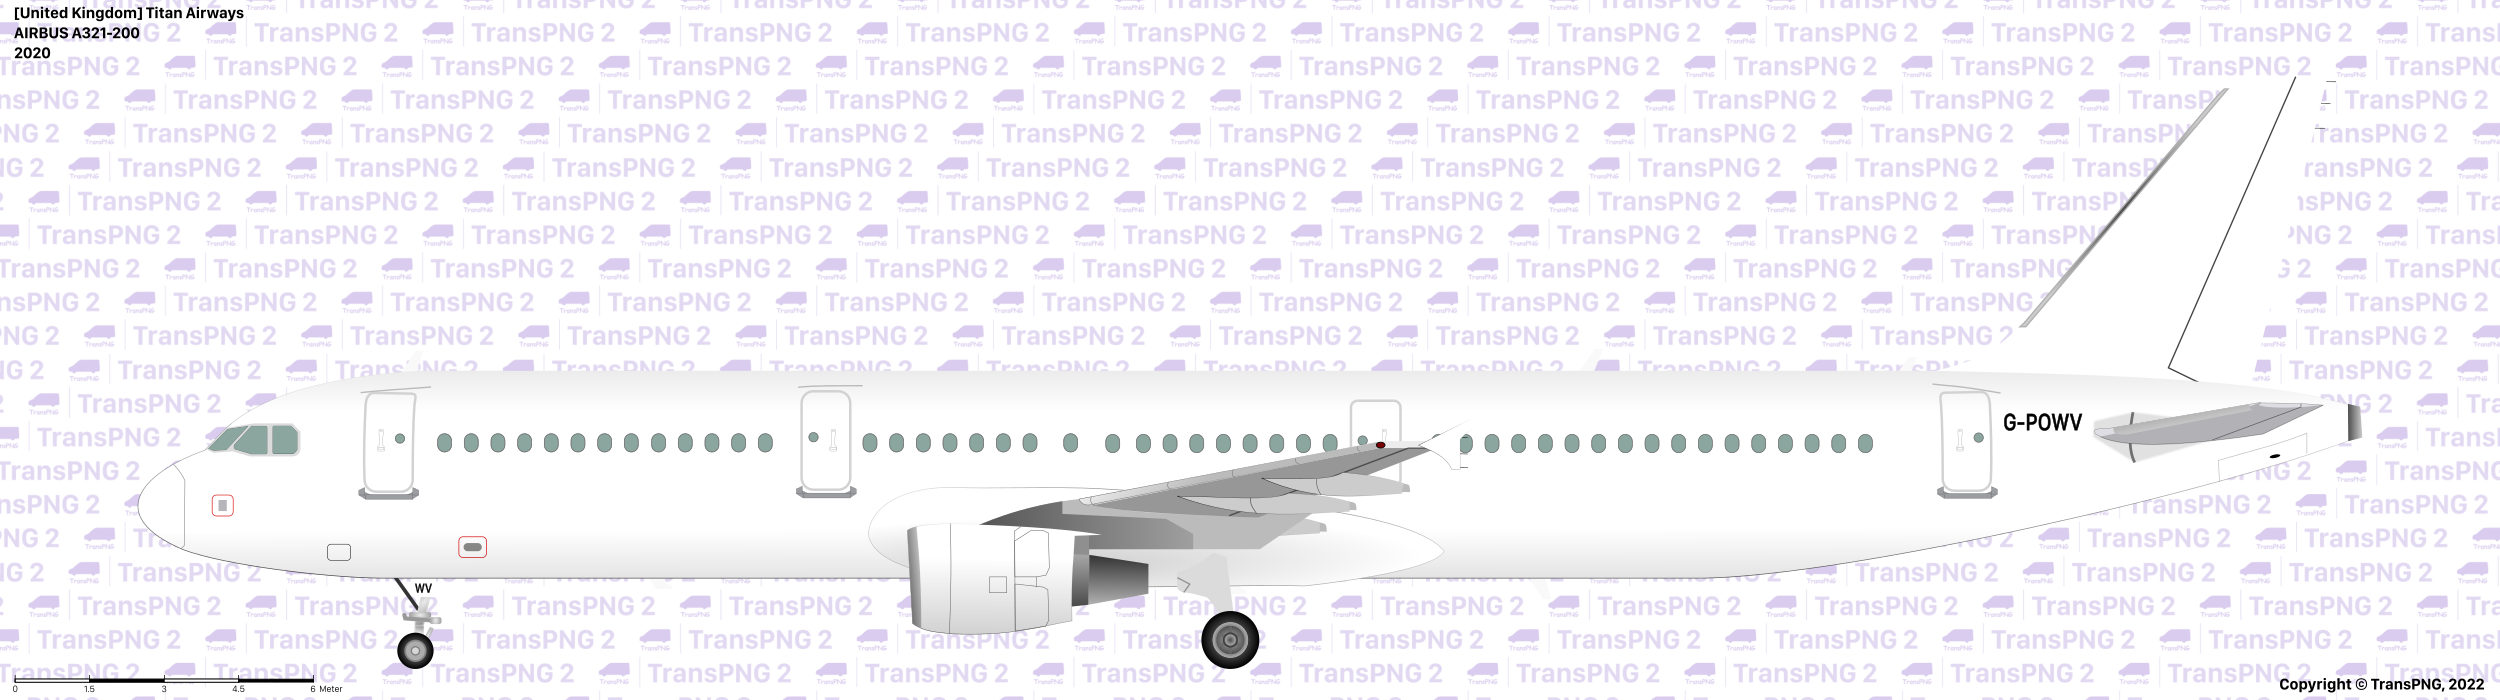 TransPNG.net | 分享世界各地多種交通工具的優秀繪圖 - 飛機 51922656837_85b7dab742_o